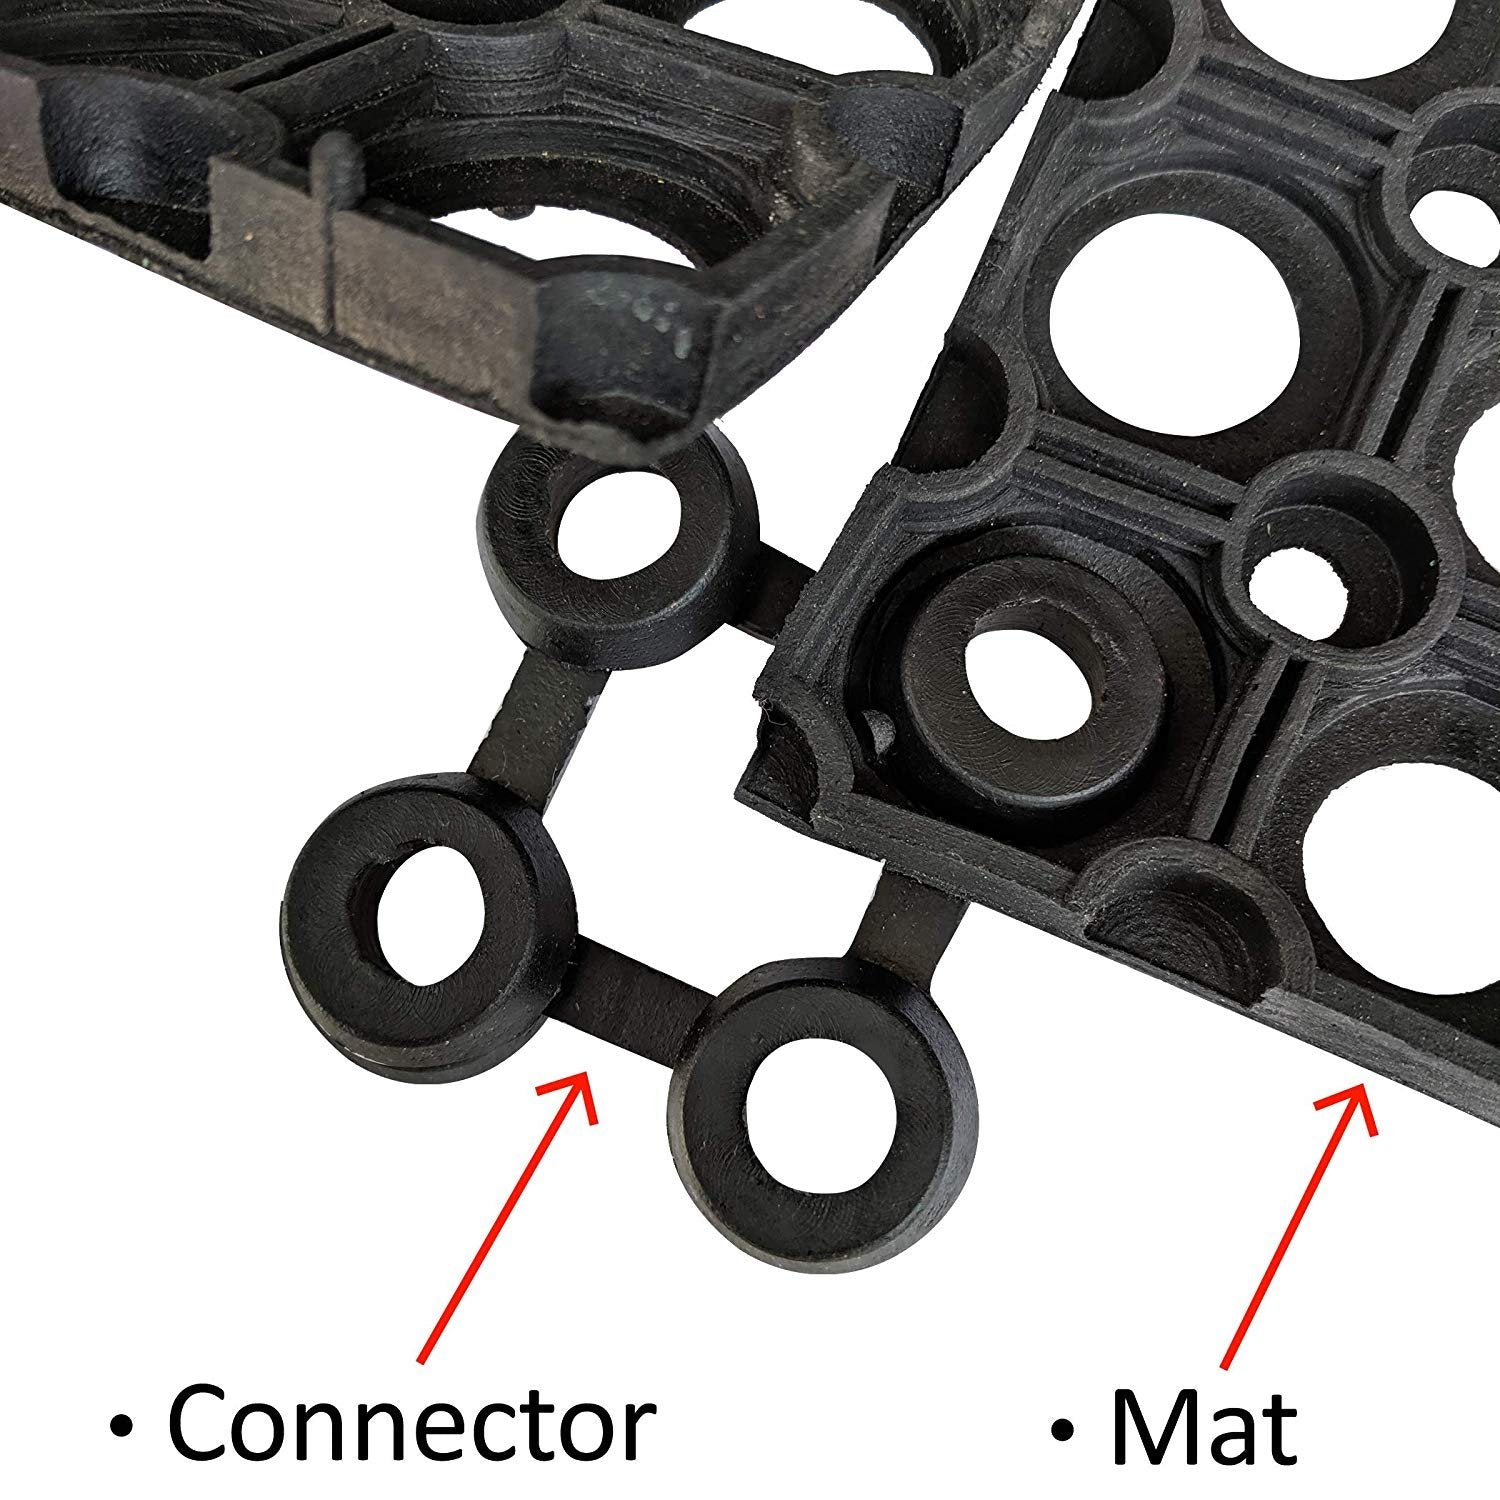  SafetyCare Interlocking Rubber Drainage Floor Mat